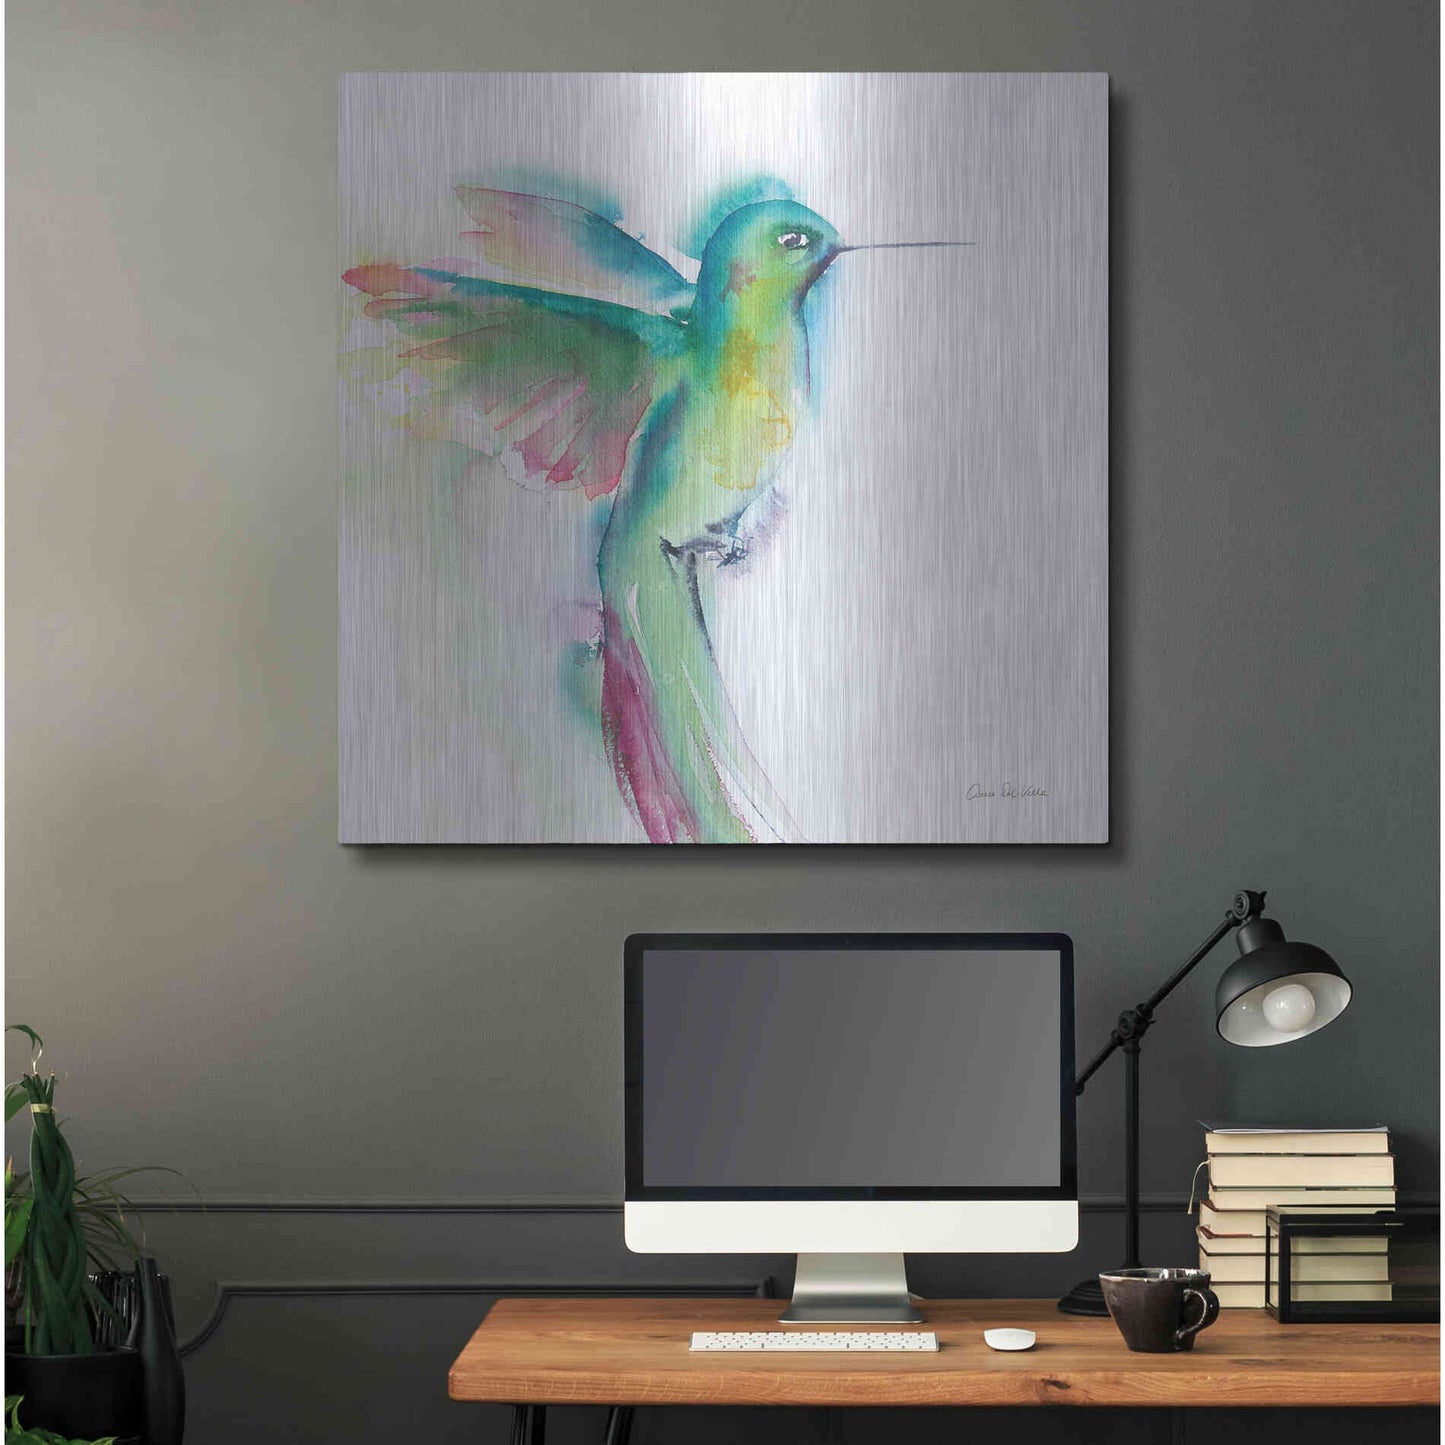 Luxe Metal Art 'Hummingbirds II' by Alan Majchrowicz, Metal Wall Art,36x36